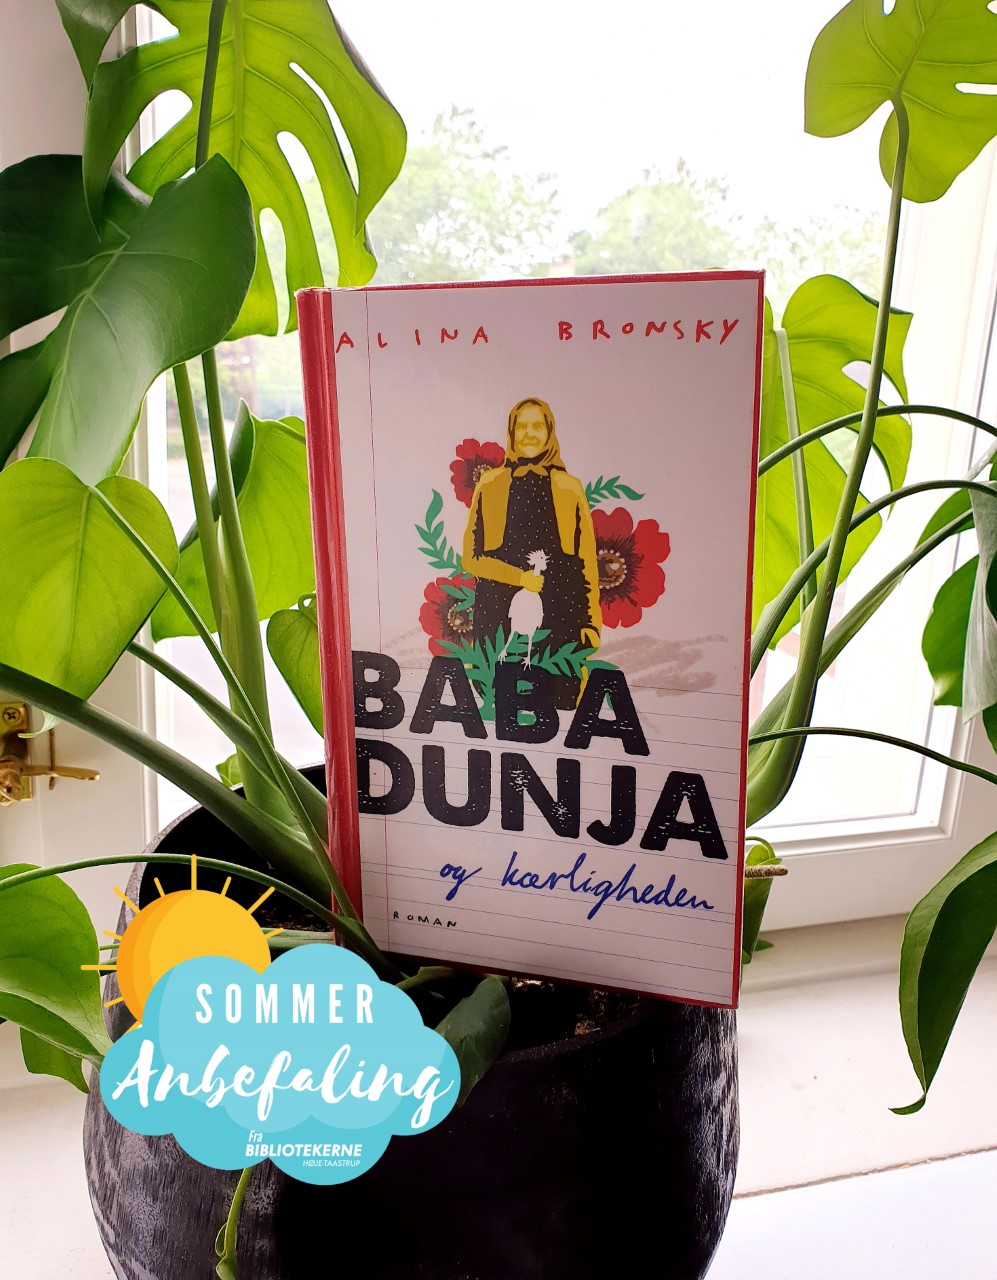 Baba Dunja og kærligheden